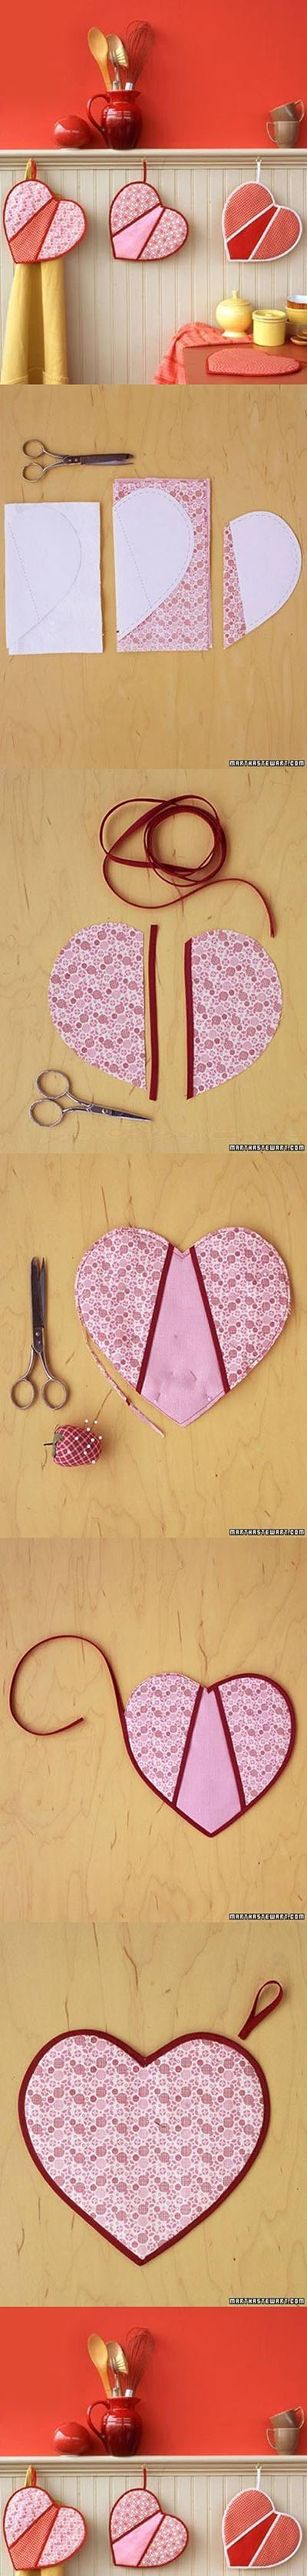 15 DIY Heart Shaped Pot Holders fc4f2262